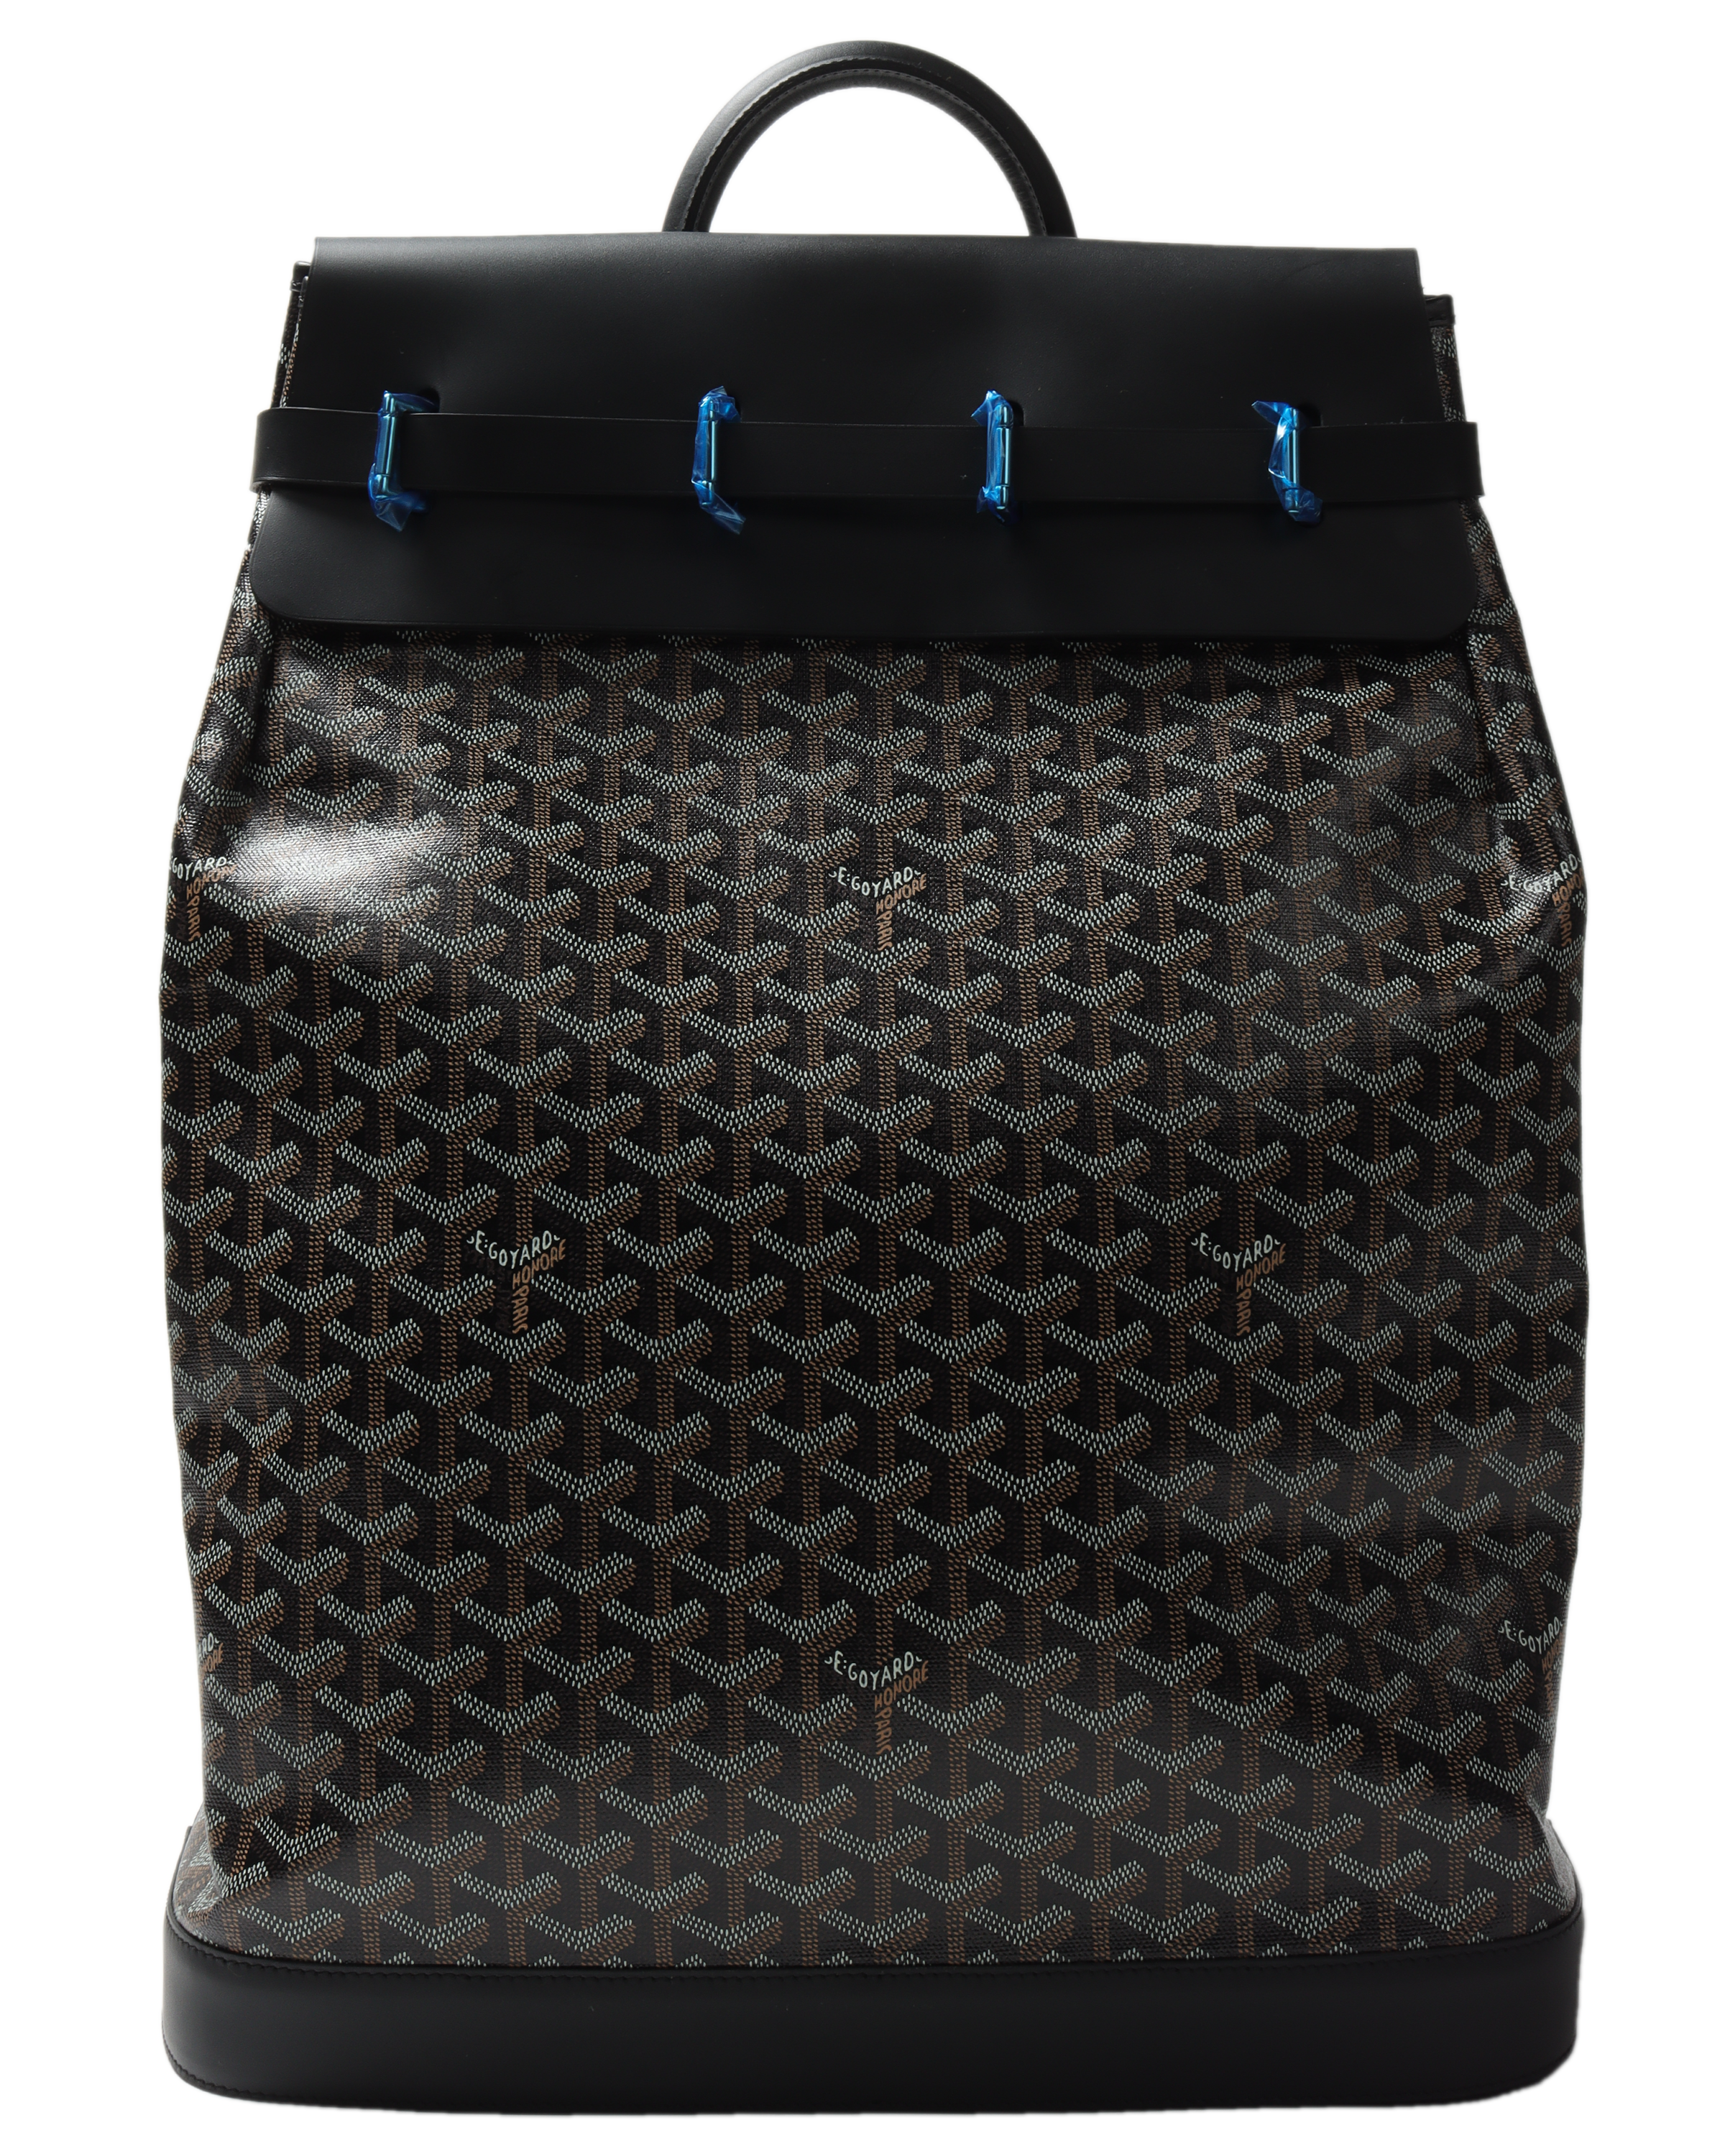 Goyardine Steamer PM 2 Backpack w/ Tags